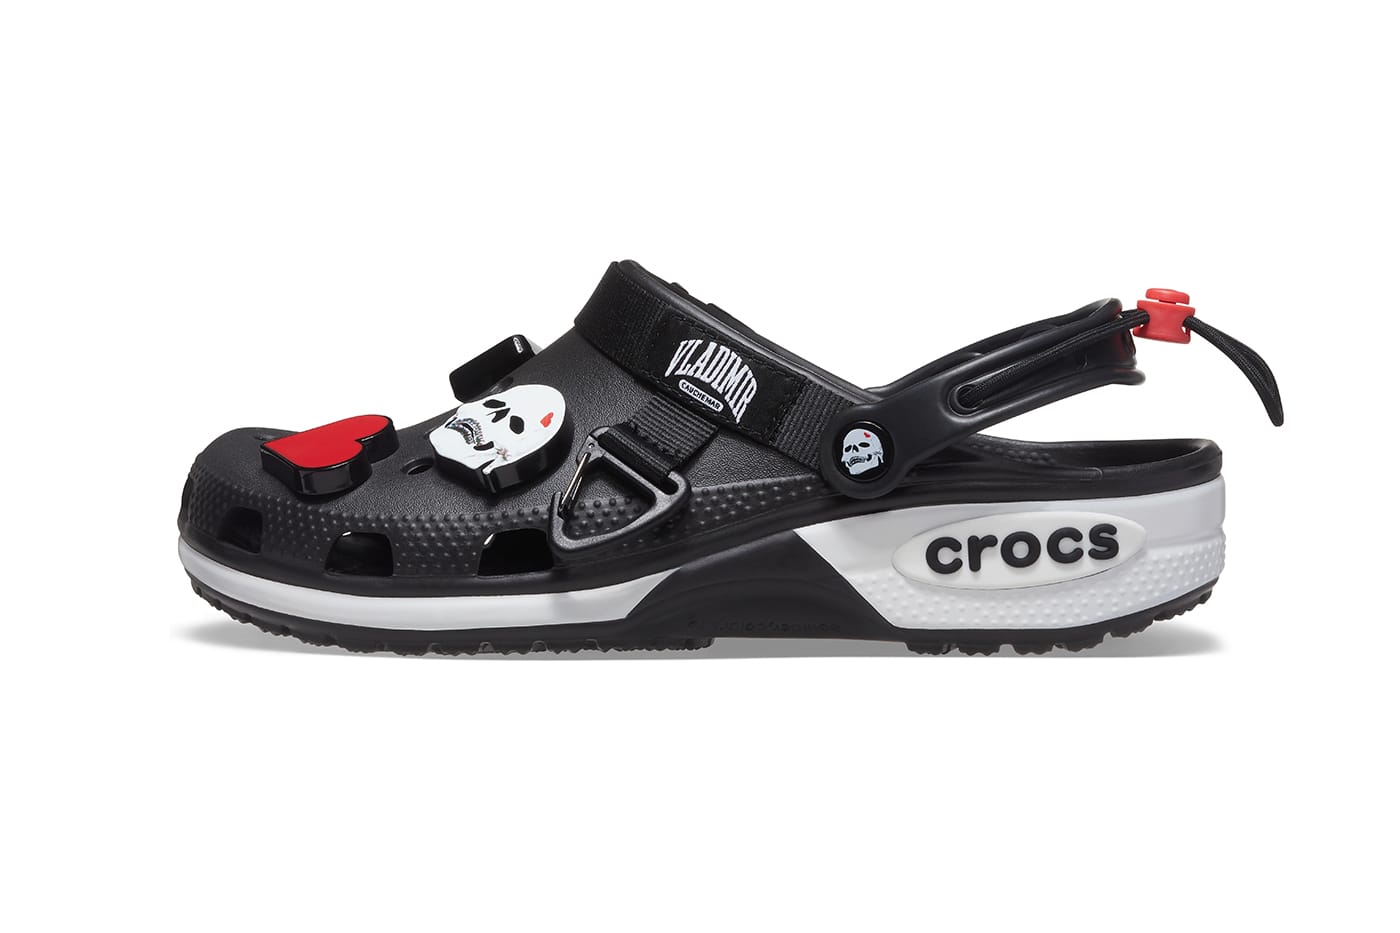 crocs latest model